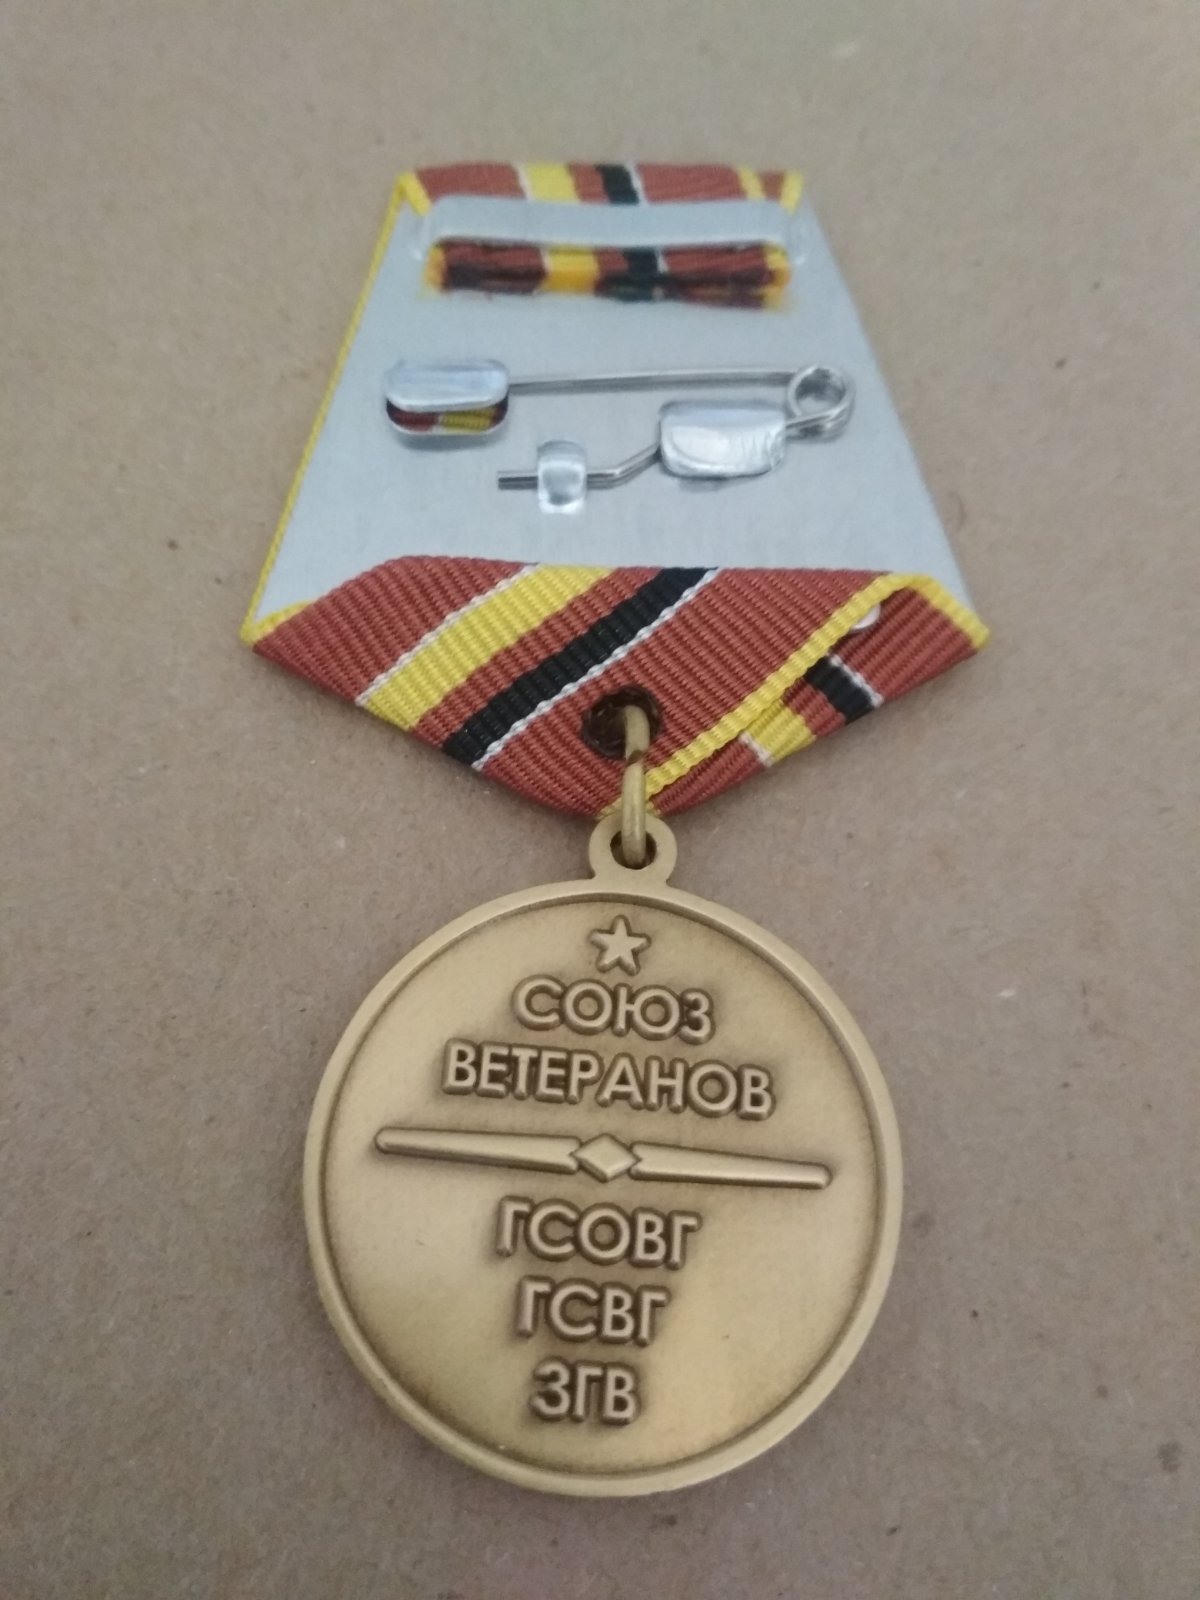 Юбилейная медаль "70 лет образования группы войск. ГСОВГ ГСВГ ЗГВ"